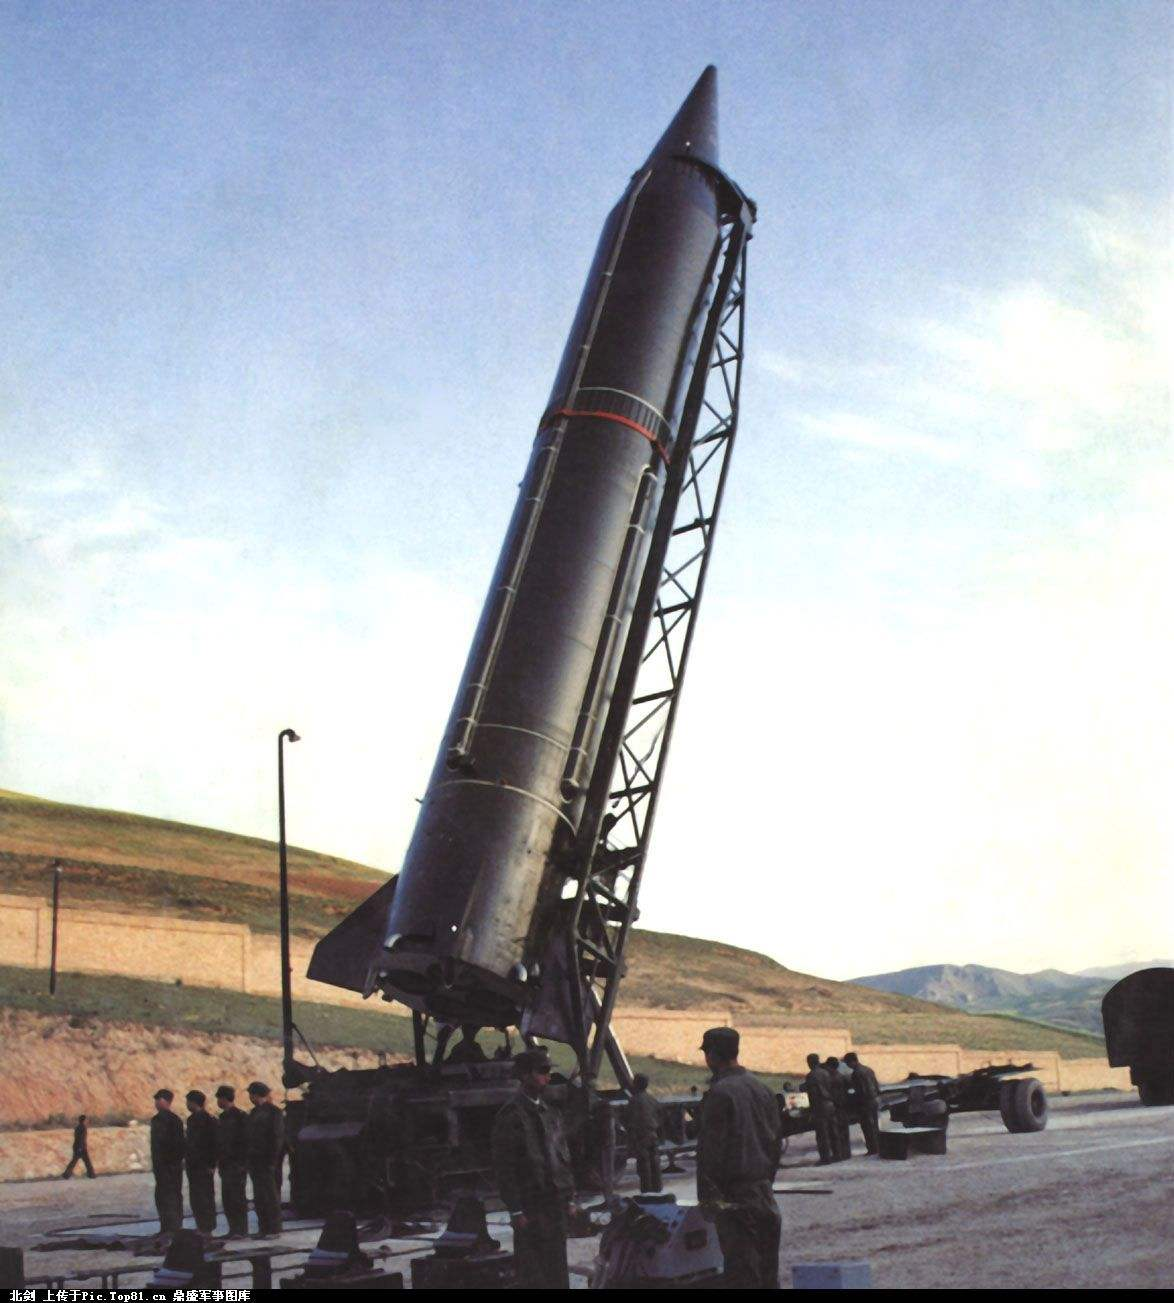 黑料,中国远程弹道导弹有多落后?从高能推进剂材料历史说起